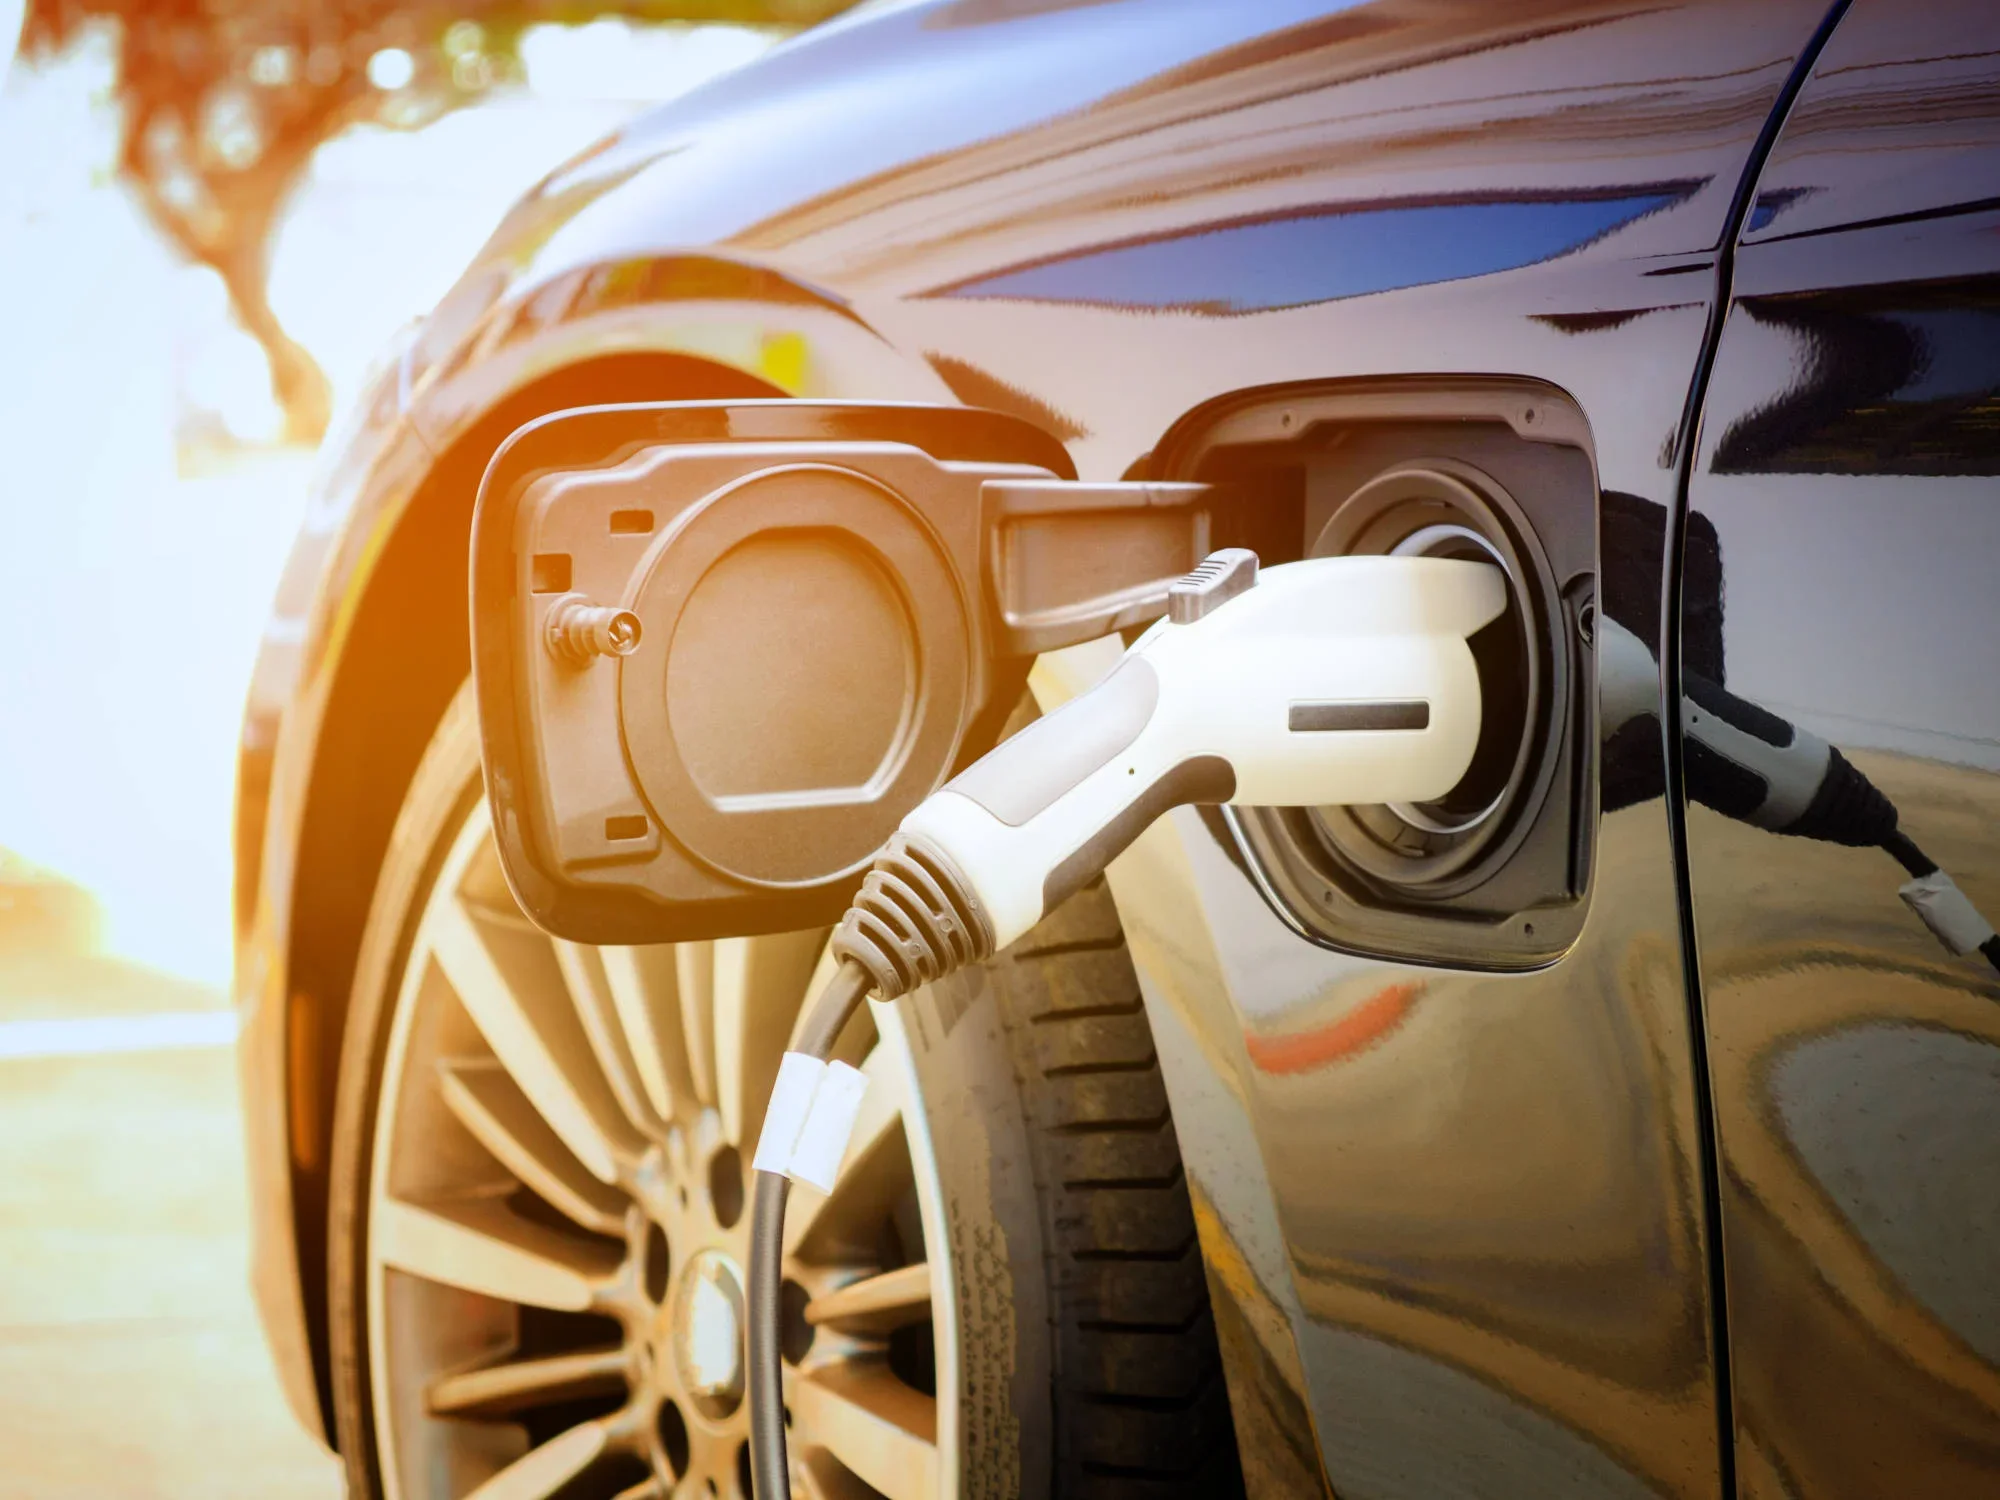 Elektroautos: BMW beendet jahrelange Irrfahrt beim E-Auto